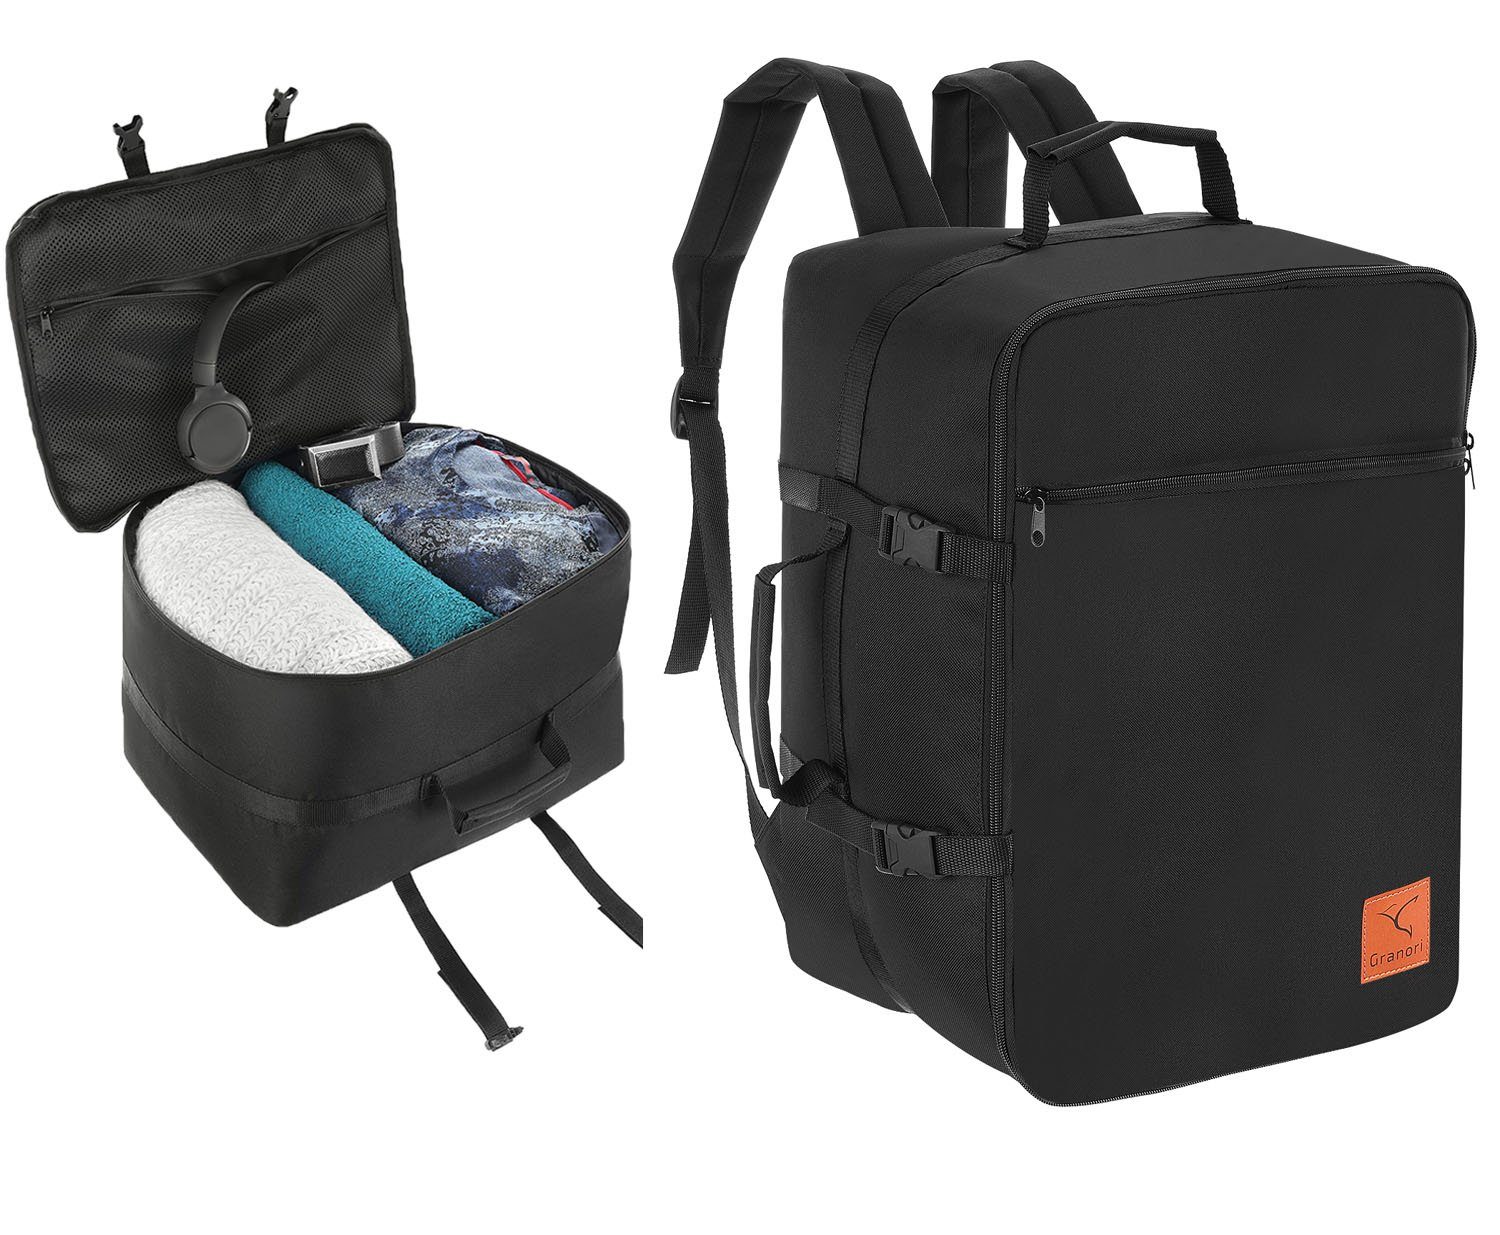 Granori Kofferrucksack Dreampack Pro 40x30x25 / 40x30x20 cm – Handgepäck-Rucksack  (Flexsize), Platzwunder mit optimaler Konstruktion zum maximalen Bepacken